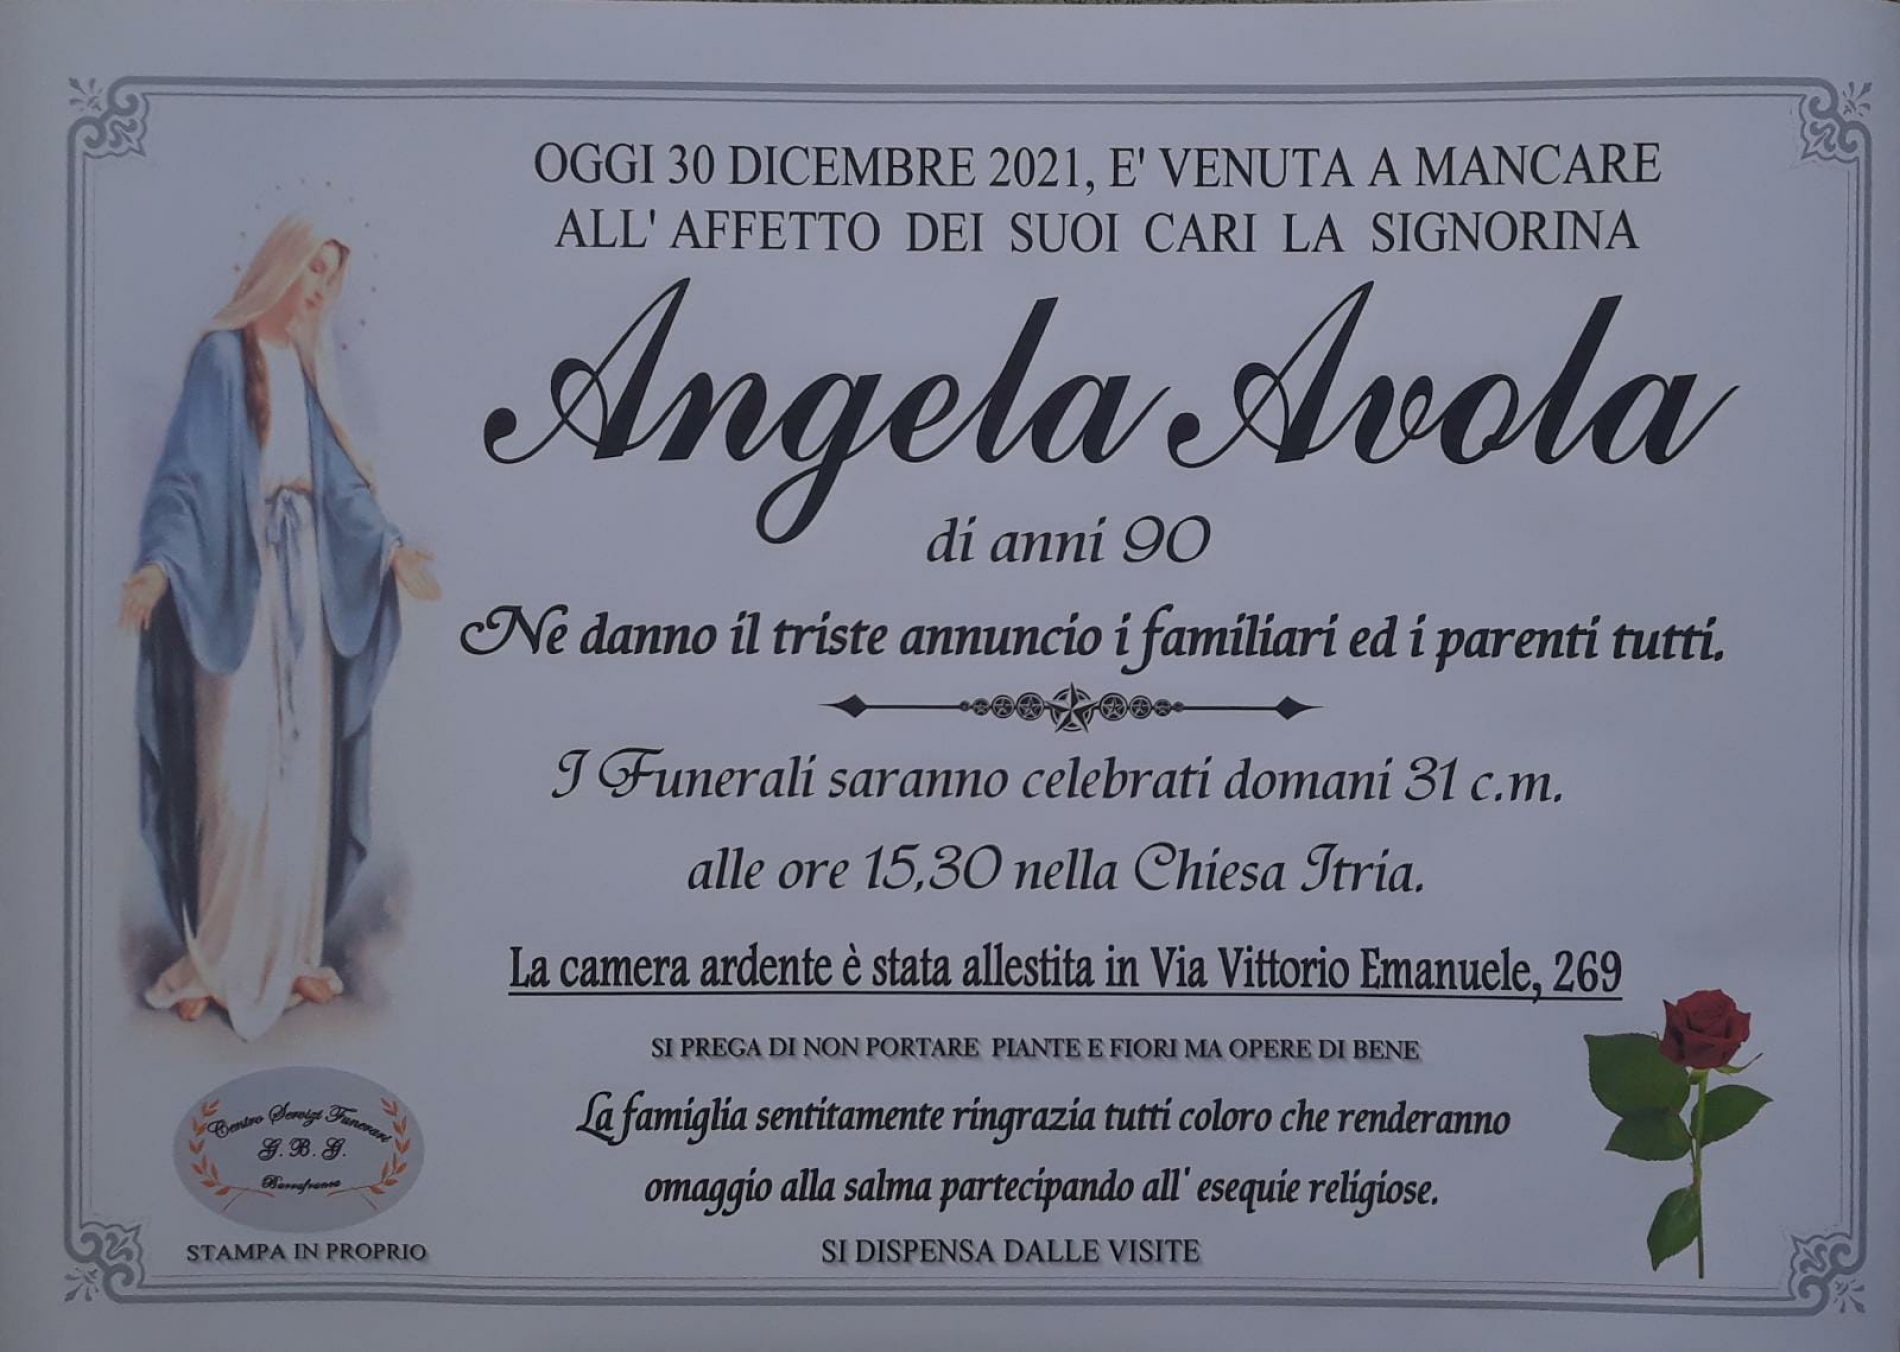 Annuncio servizi funerari agenzia G.B.G. signorina Angela Avola di anni 90